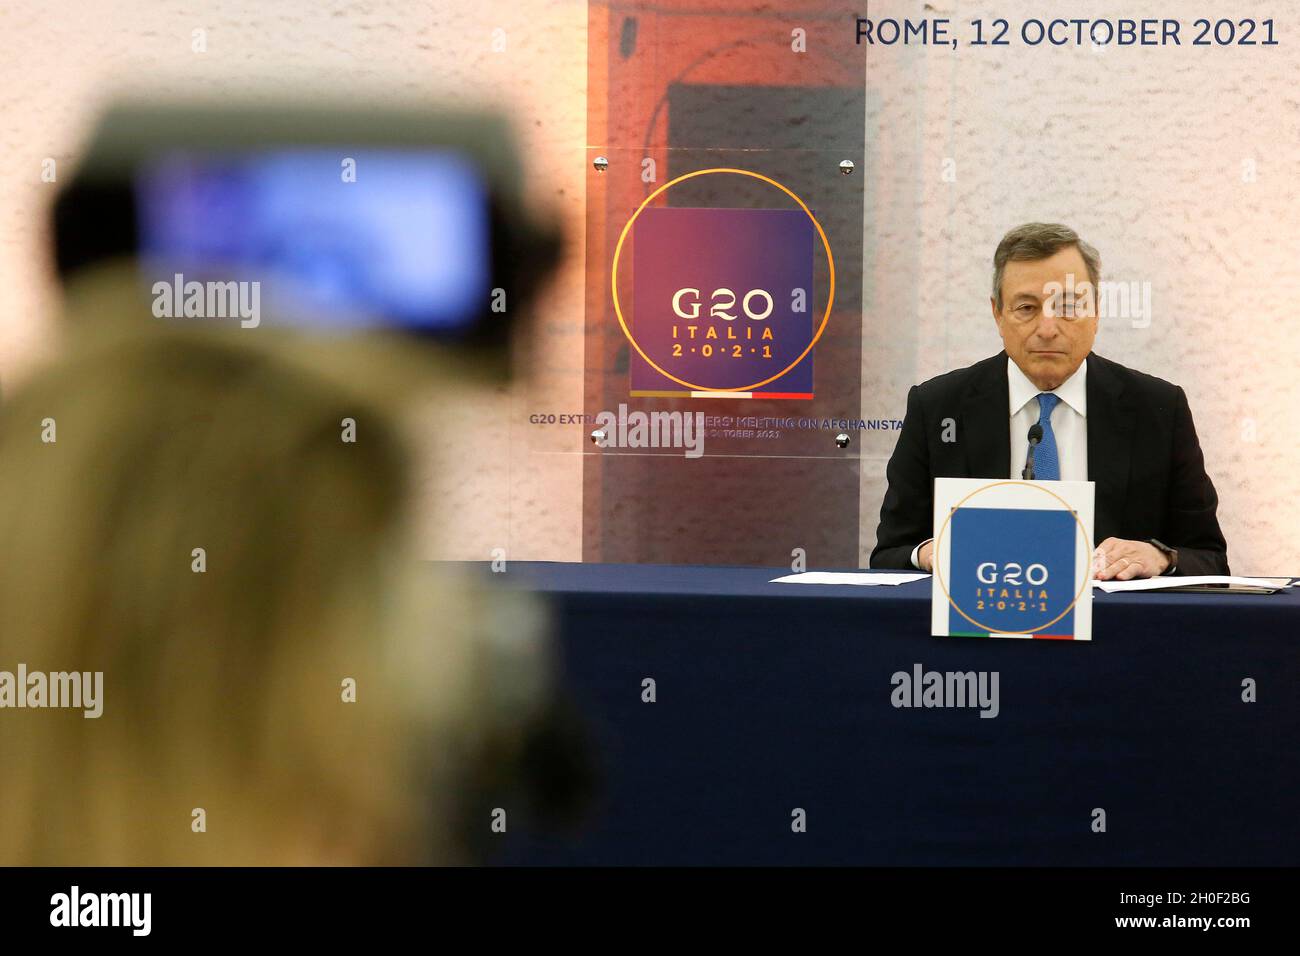 Rome, Italie.12 octobre 2021.Le Premier ministre italien Mario Draghi assiste à une conférence de presse après la réunion extraordinaire des dirigeants du G20 sur l'Afghanistan.Rome (Italie), 12 octobre 2021 photo Samantha Zucchi Insidefoto crédit: Insidefoto srl/Alay Live News Banque D'Images